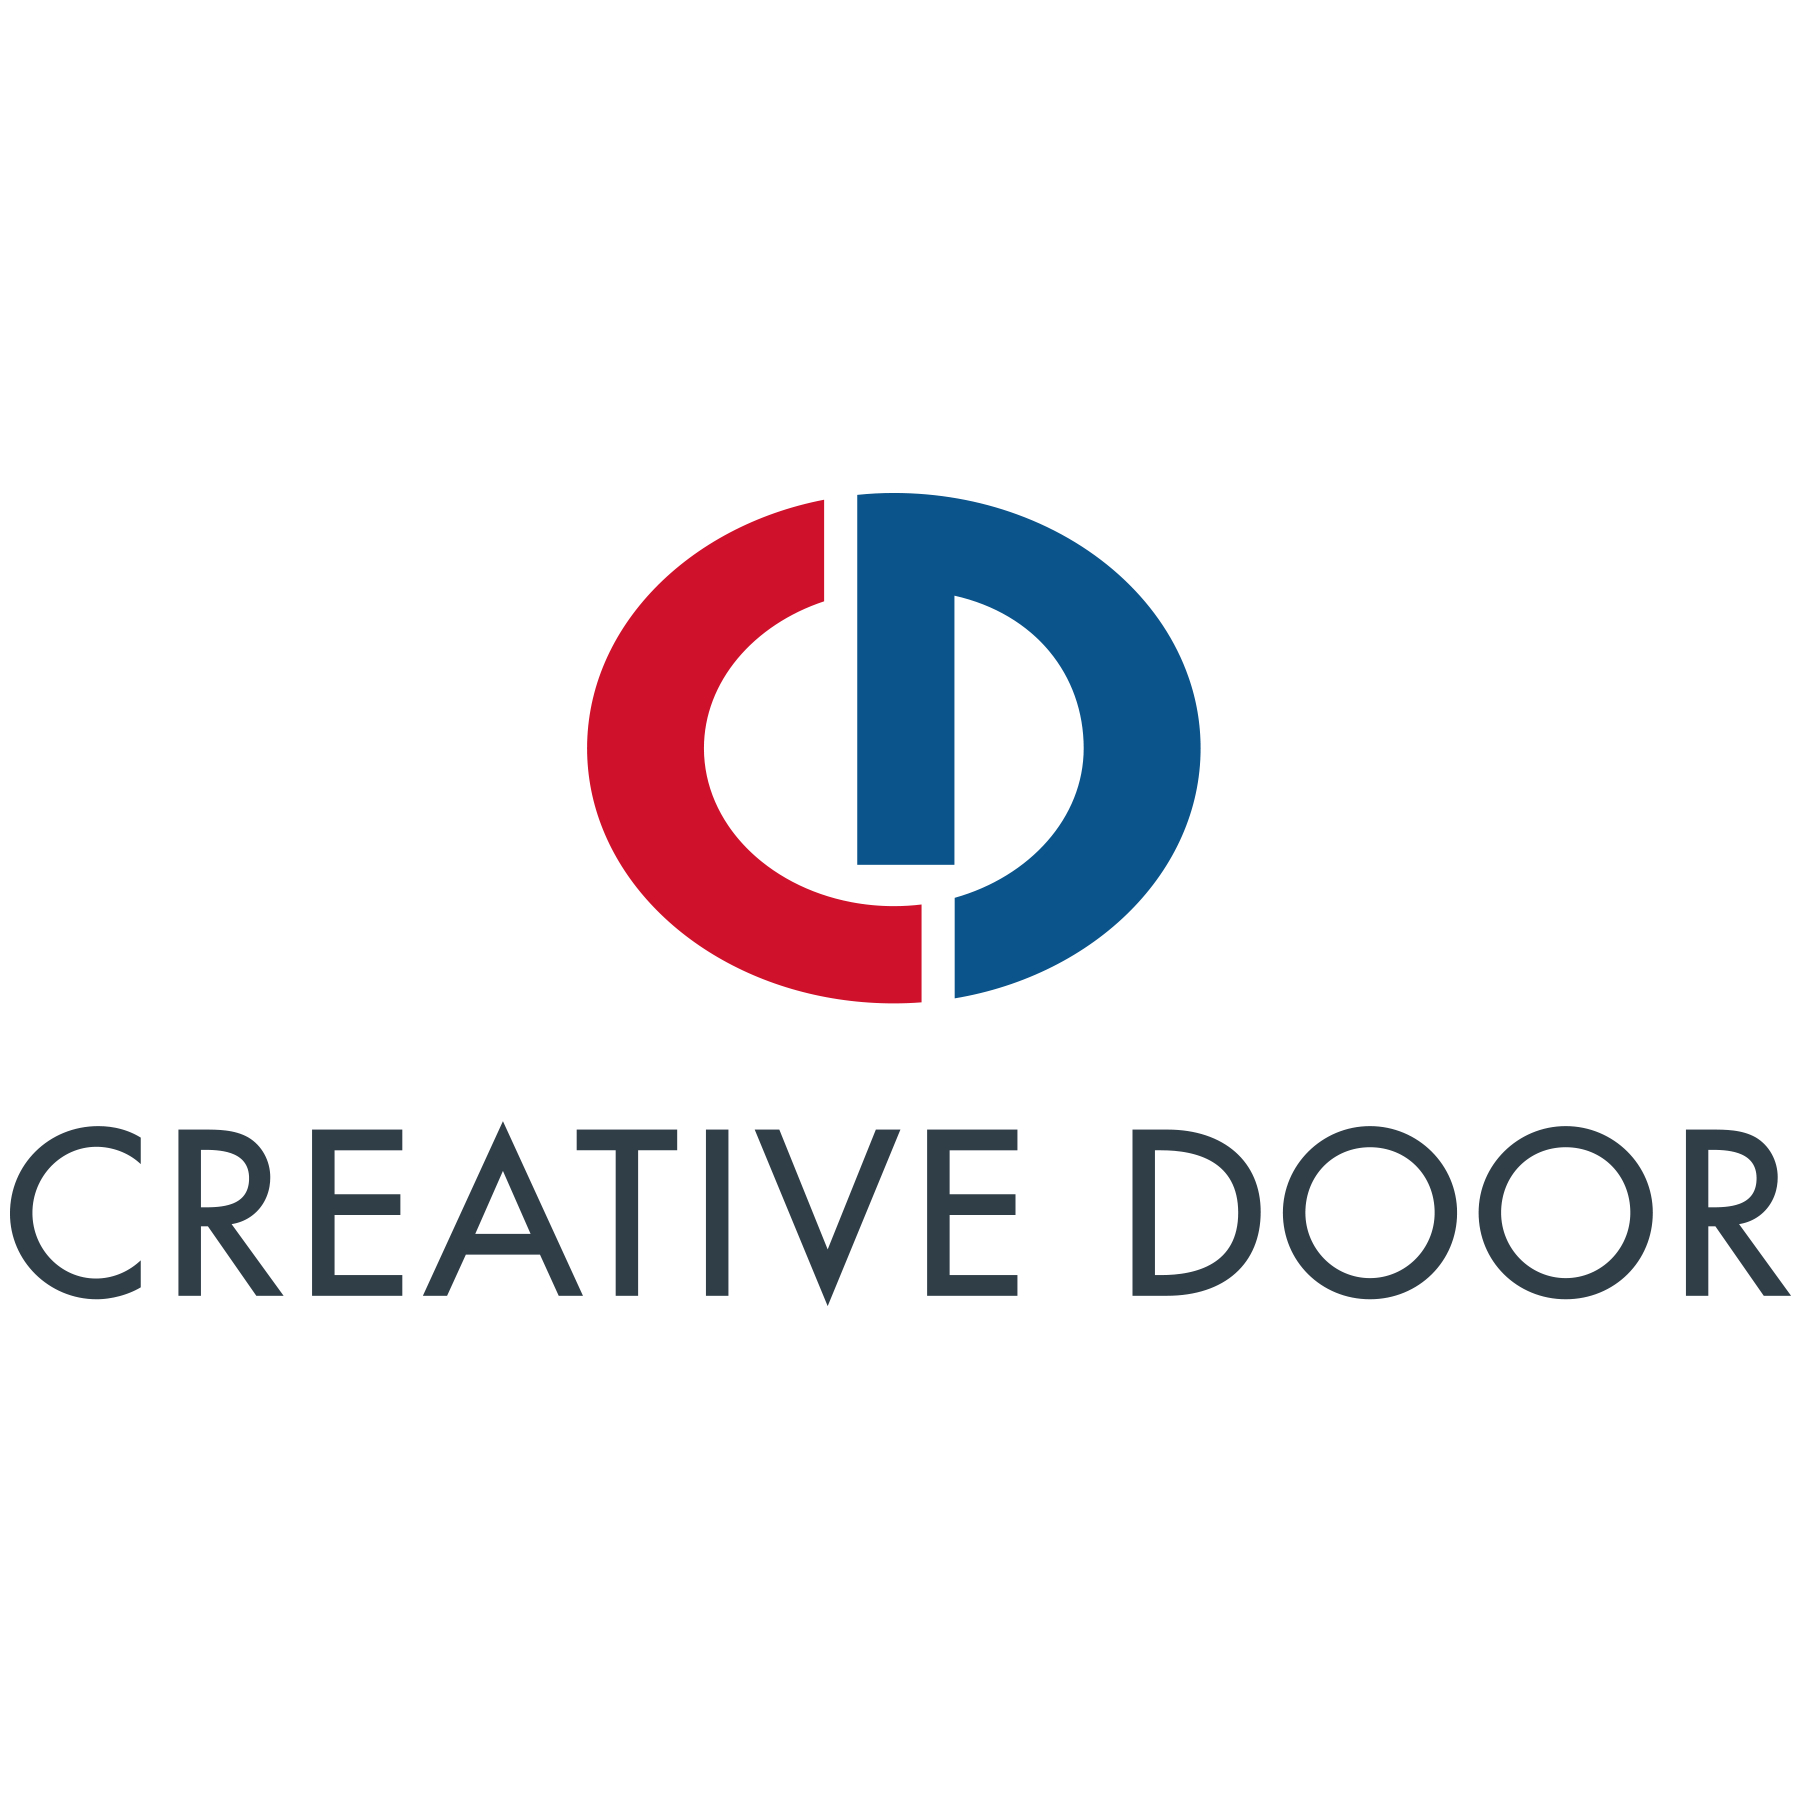 Creative Door Services Ltd - Overhead & Garage Doors